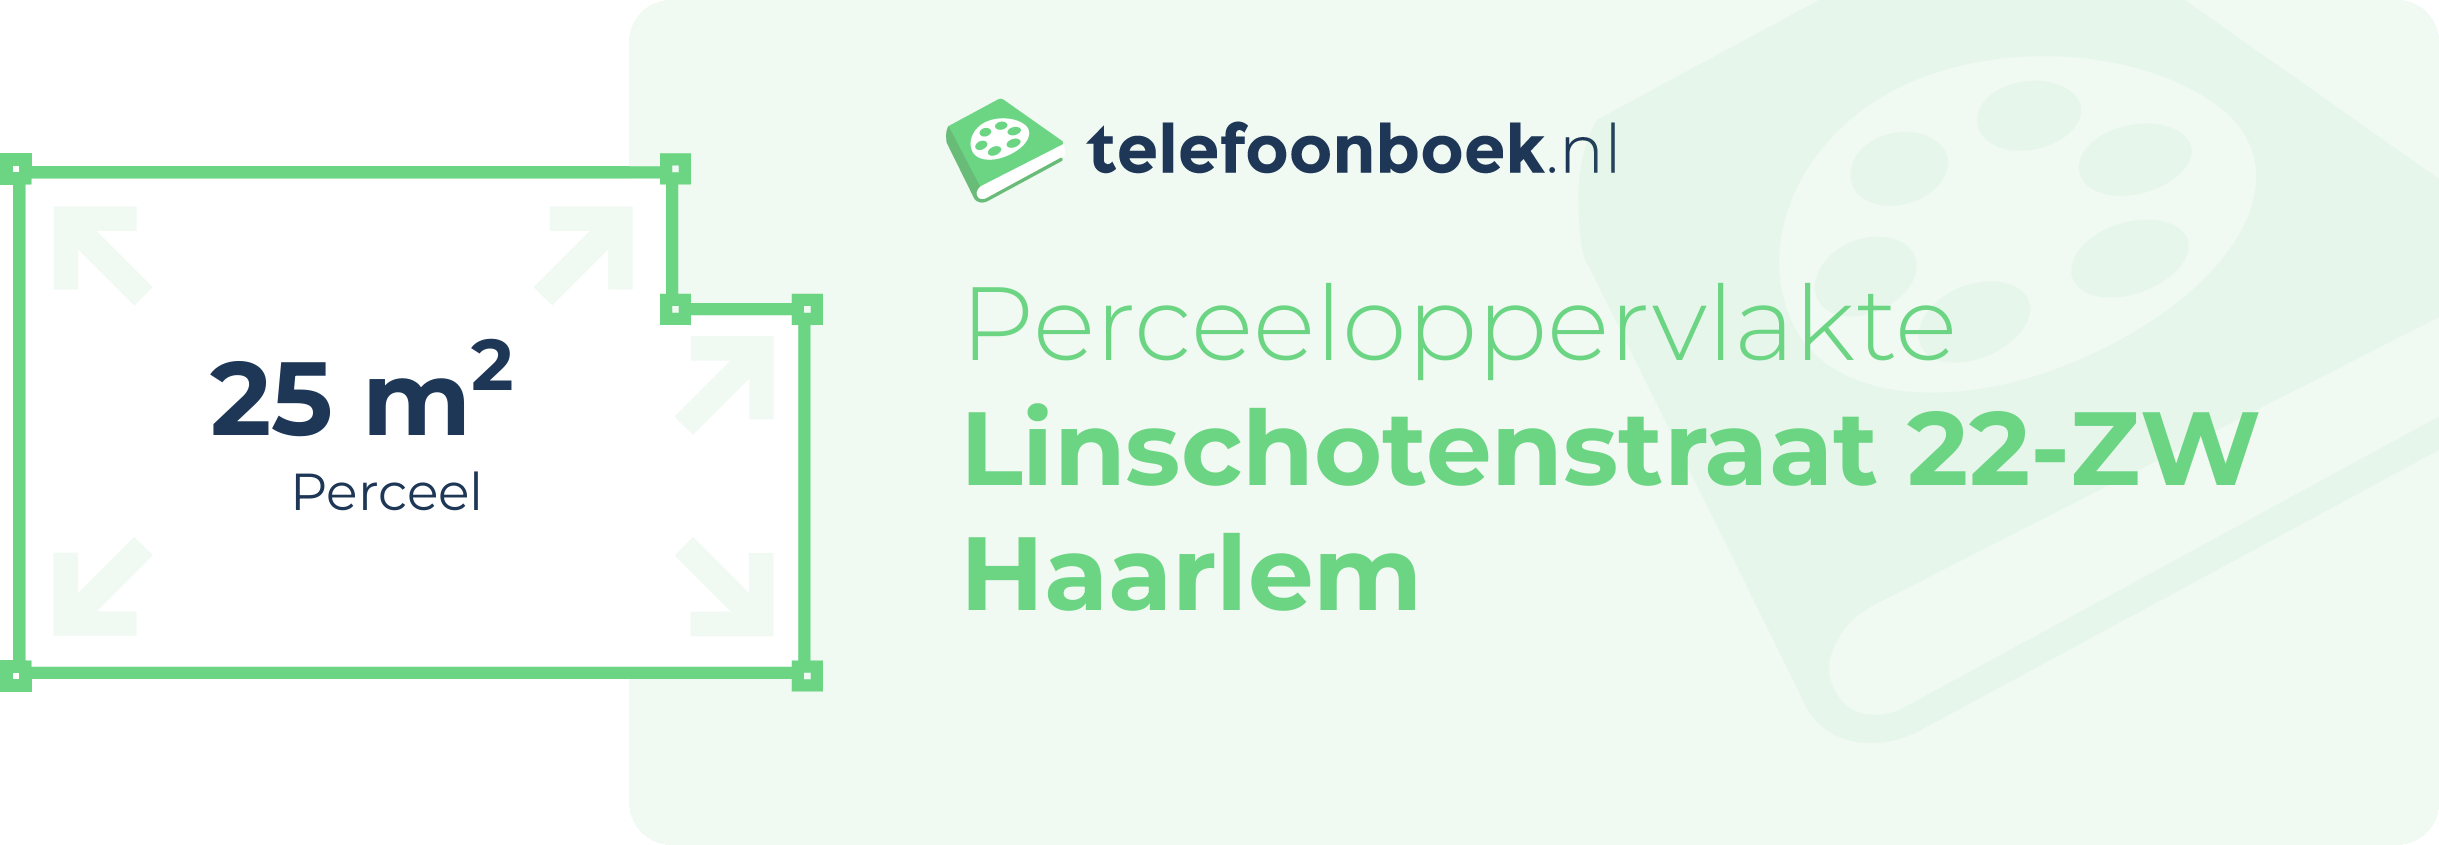 Perceeloppervlakte Linschotenstraat 22-ZW Haarlem